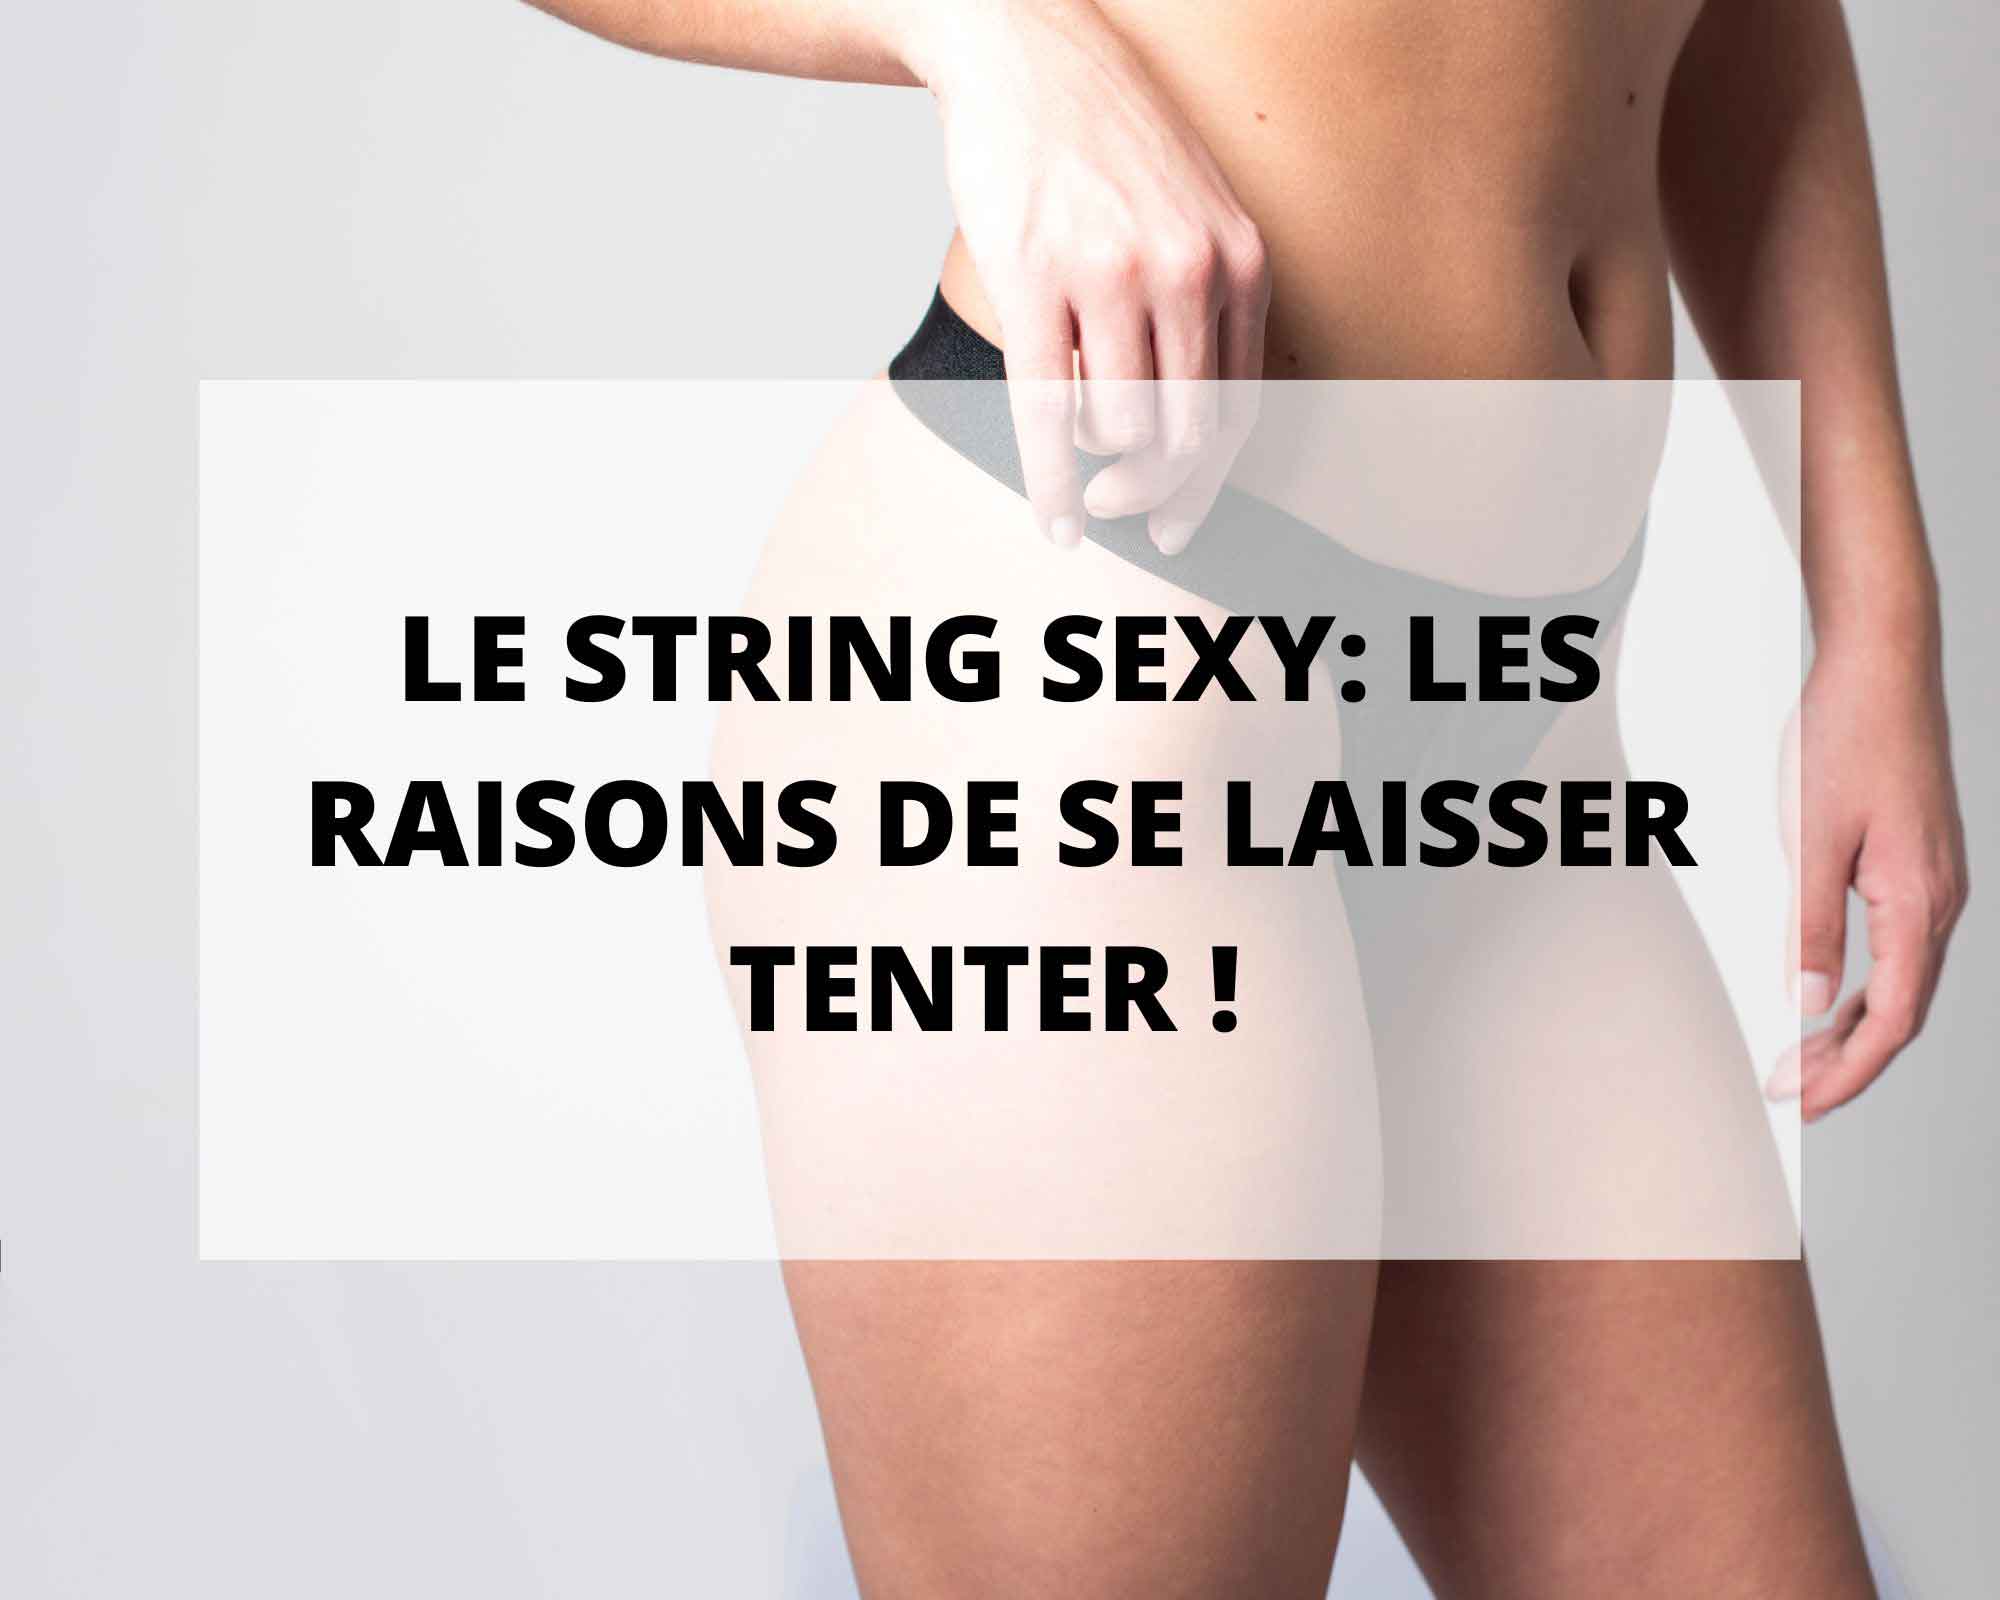 Les 4 raisons de se laisser par l'achat d'un string sexy et pourquoi par un string de la lingerie sans prétention